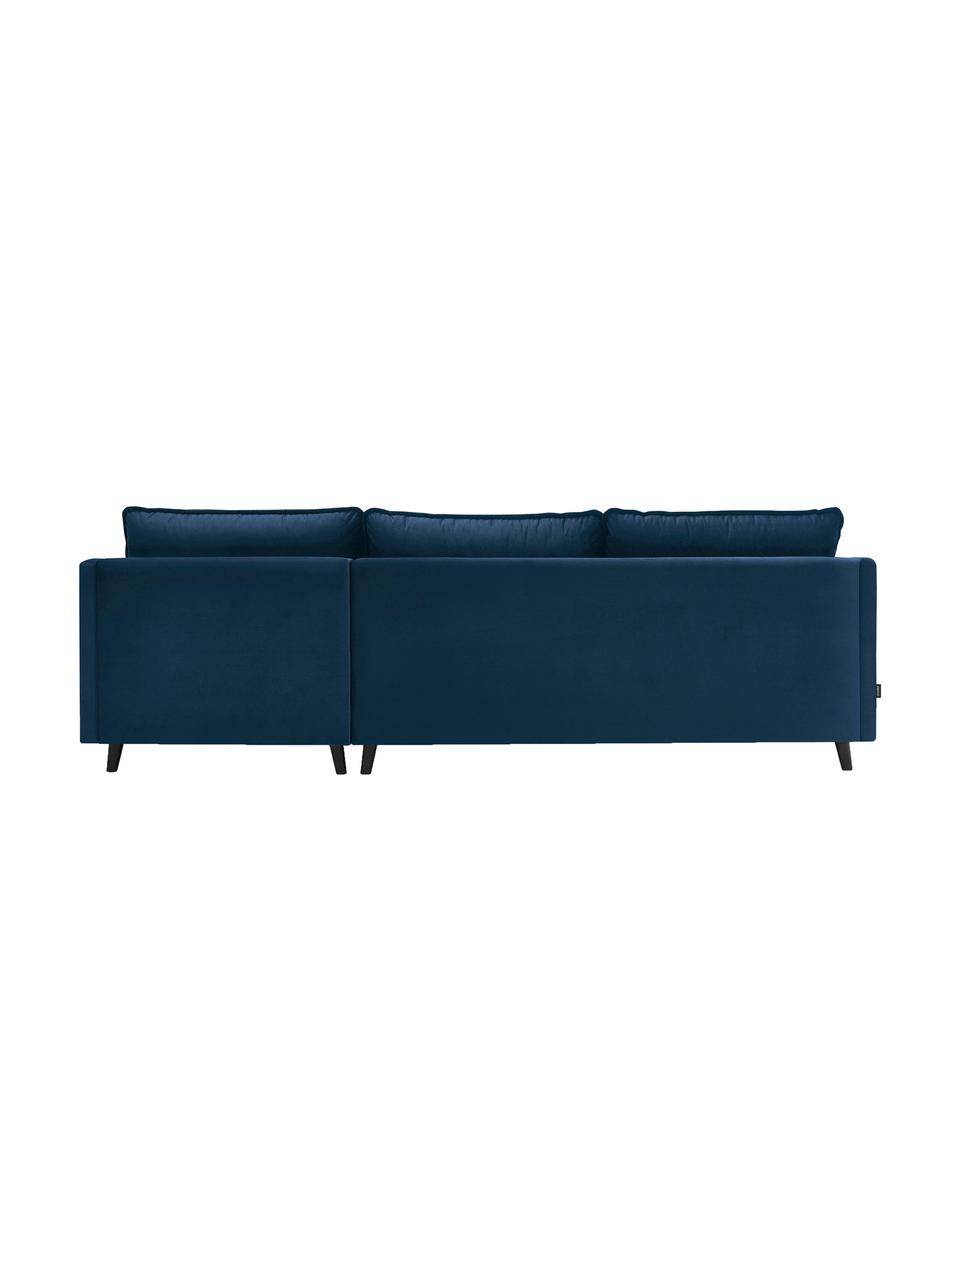 Sofa narożna z aksamitu z funkcją spania Loft, Tapicerka: 100% aksamit poliestrowy, Nogi: metal lakierowany, Granatowy, S 275 x G 181 cm